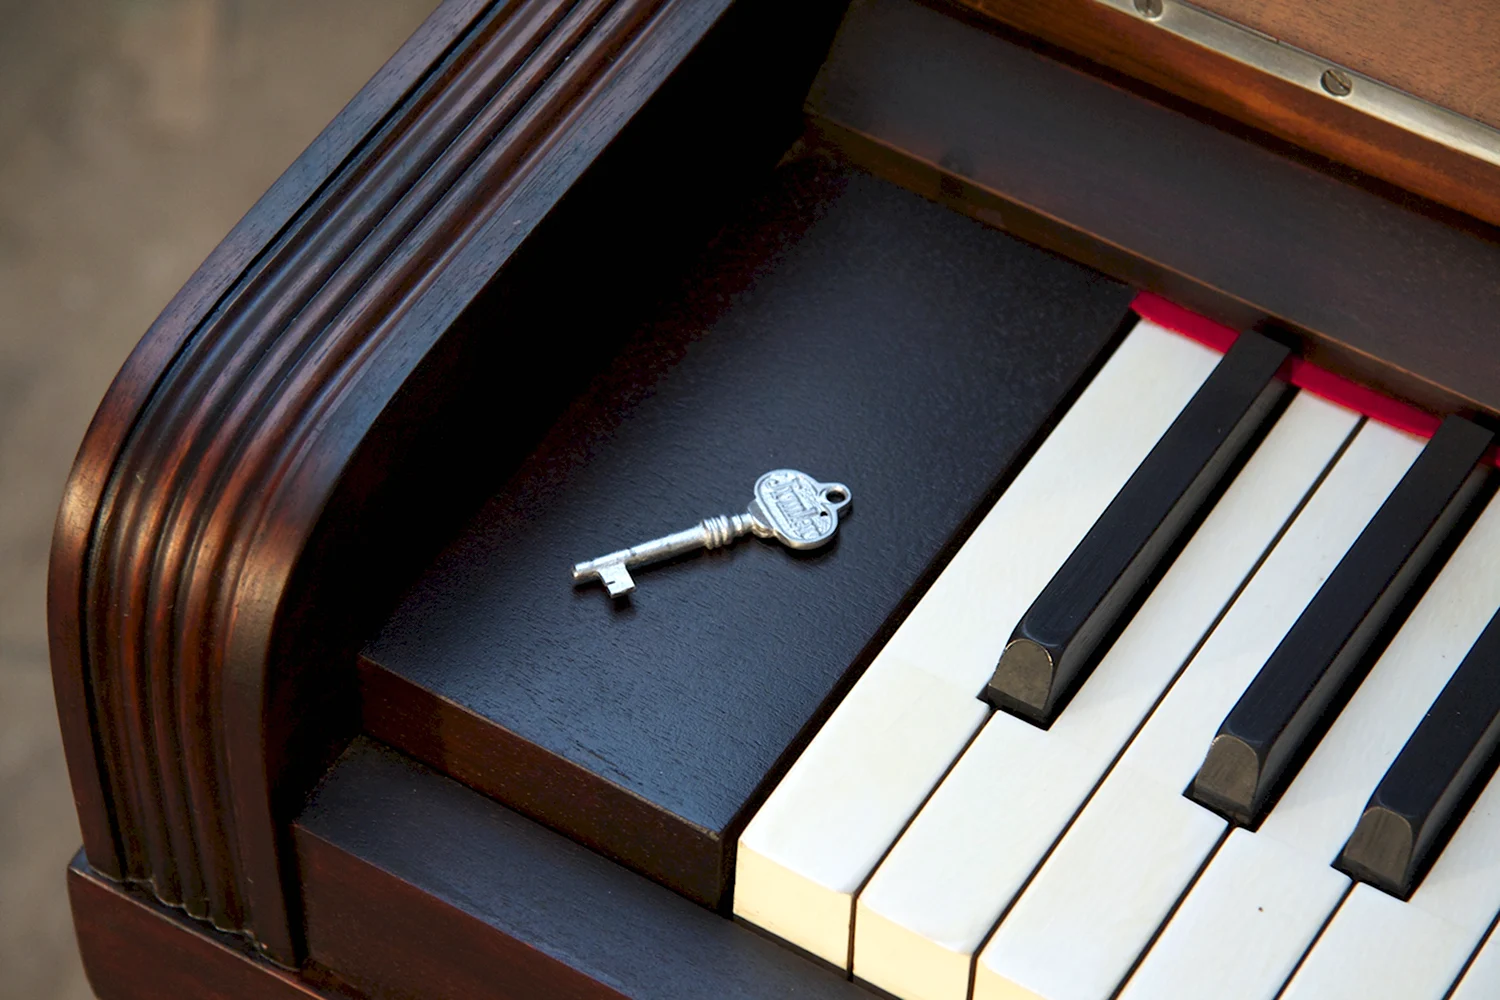 Рояль музыкальный инструмент